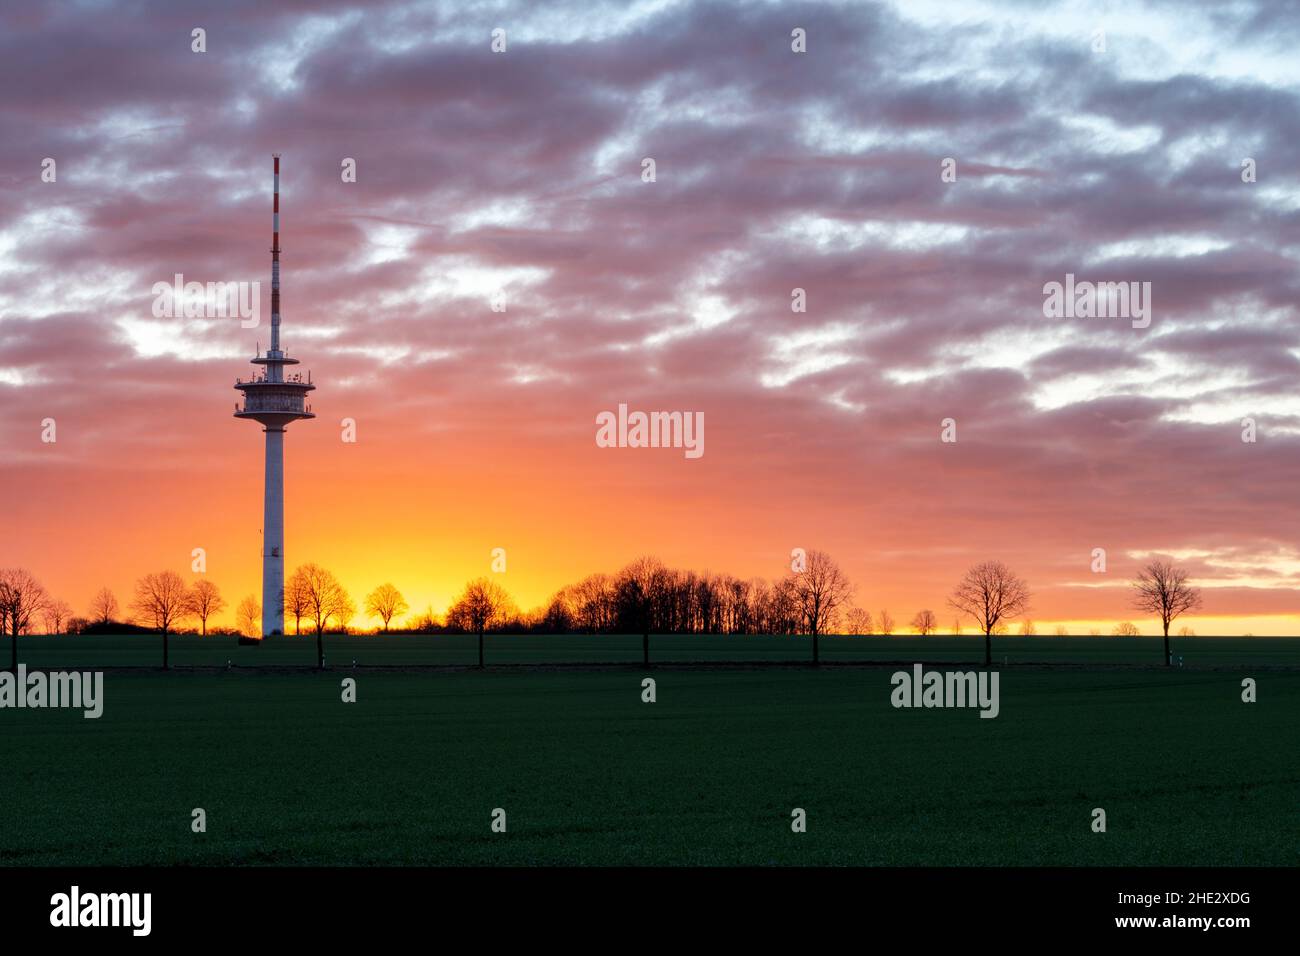 Am Fernsehturm geht die Sonne auf Stock Photo